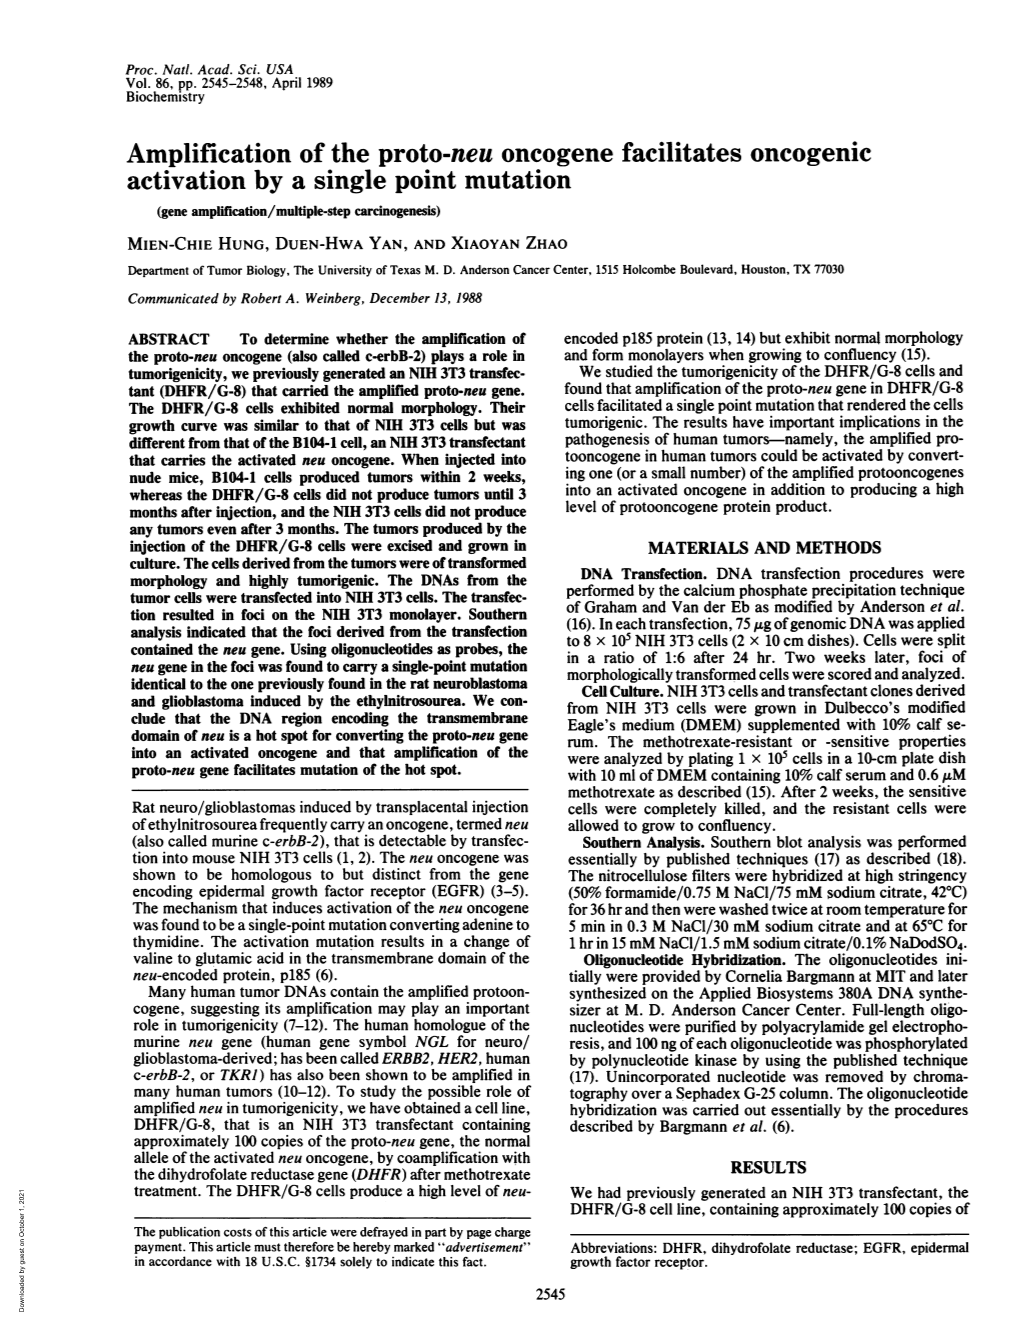 Amplification of the Proto-Neu Oncogene Facilitates Oncogenic